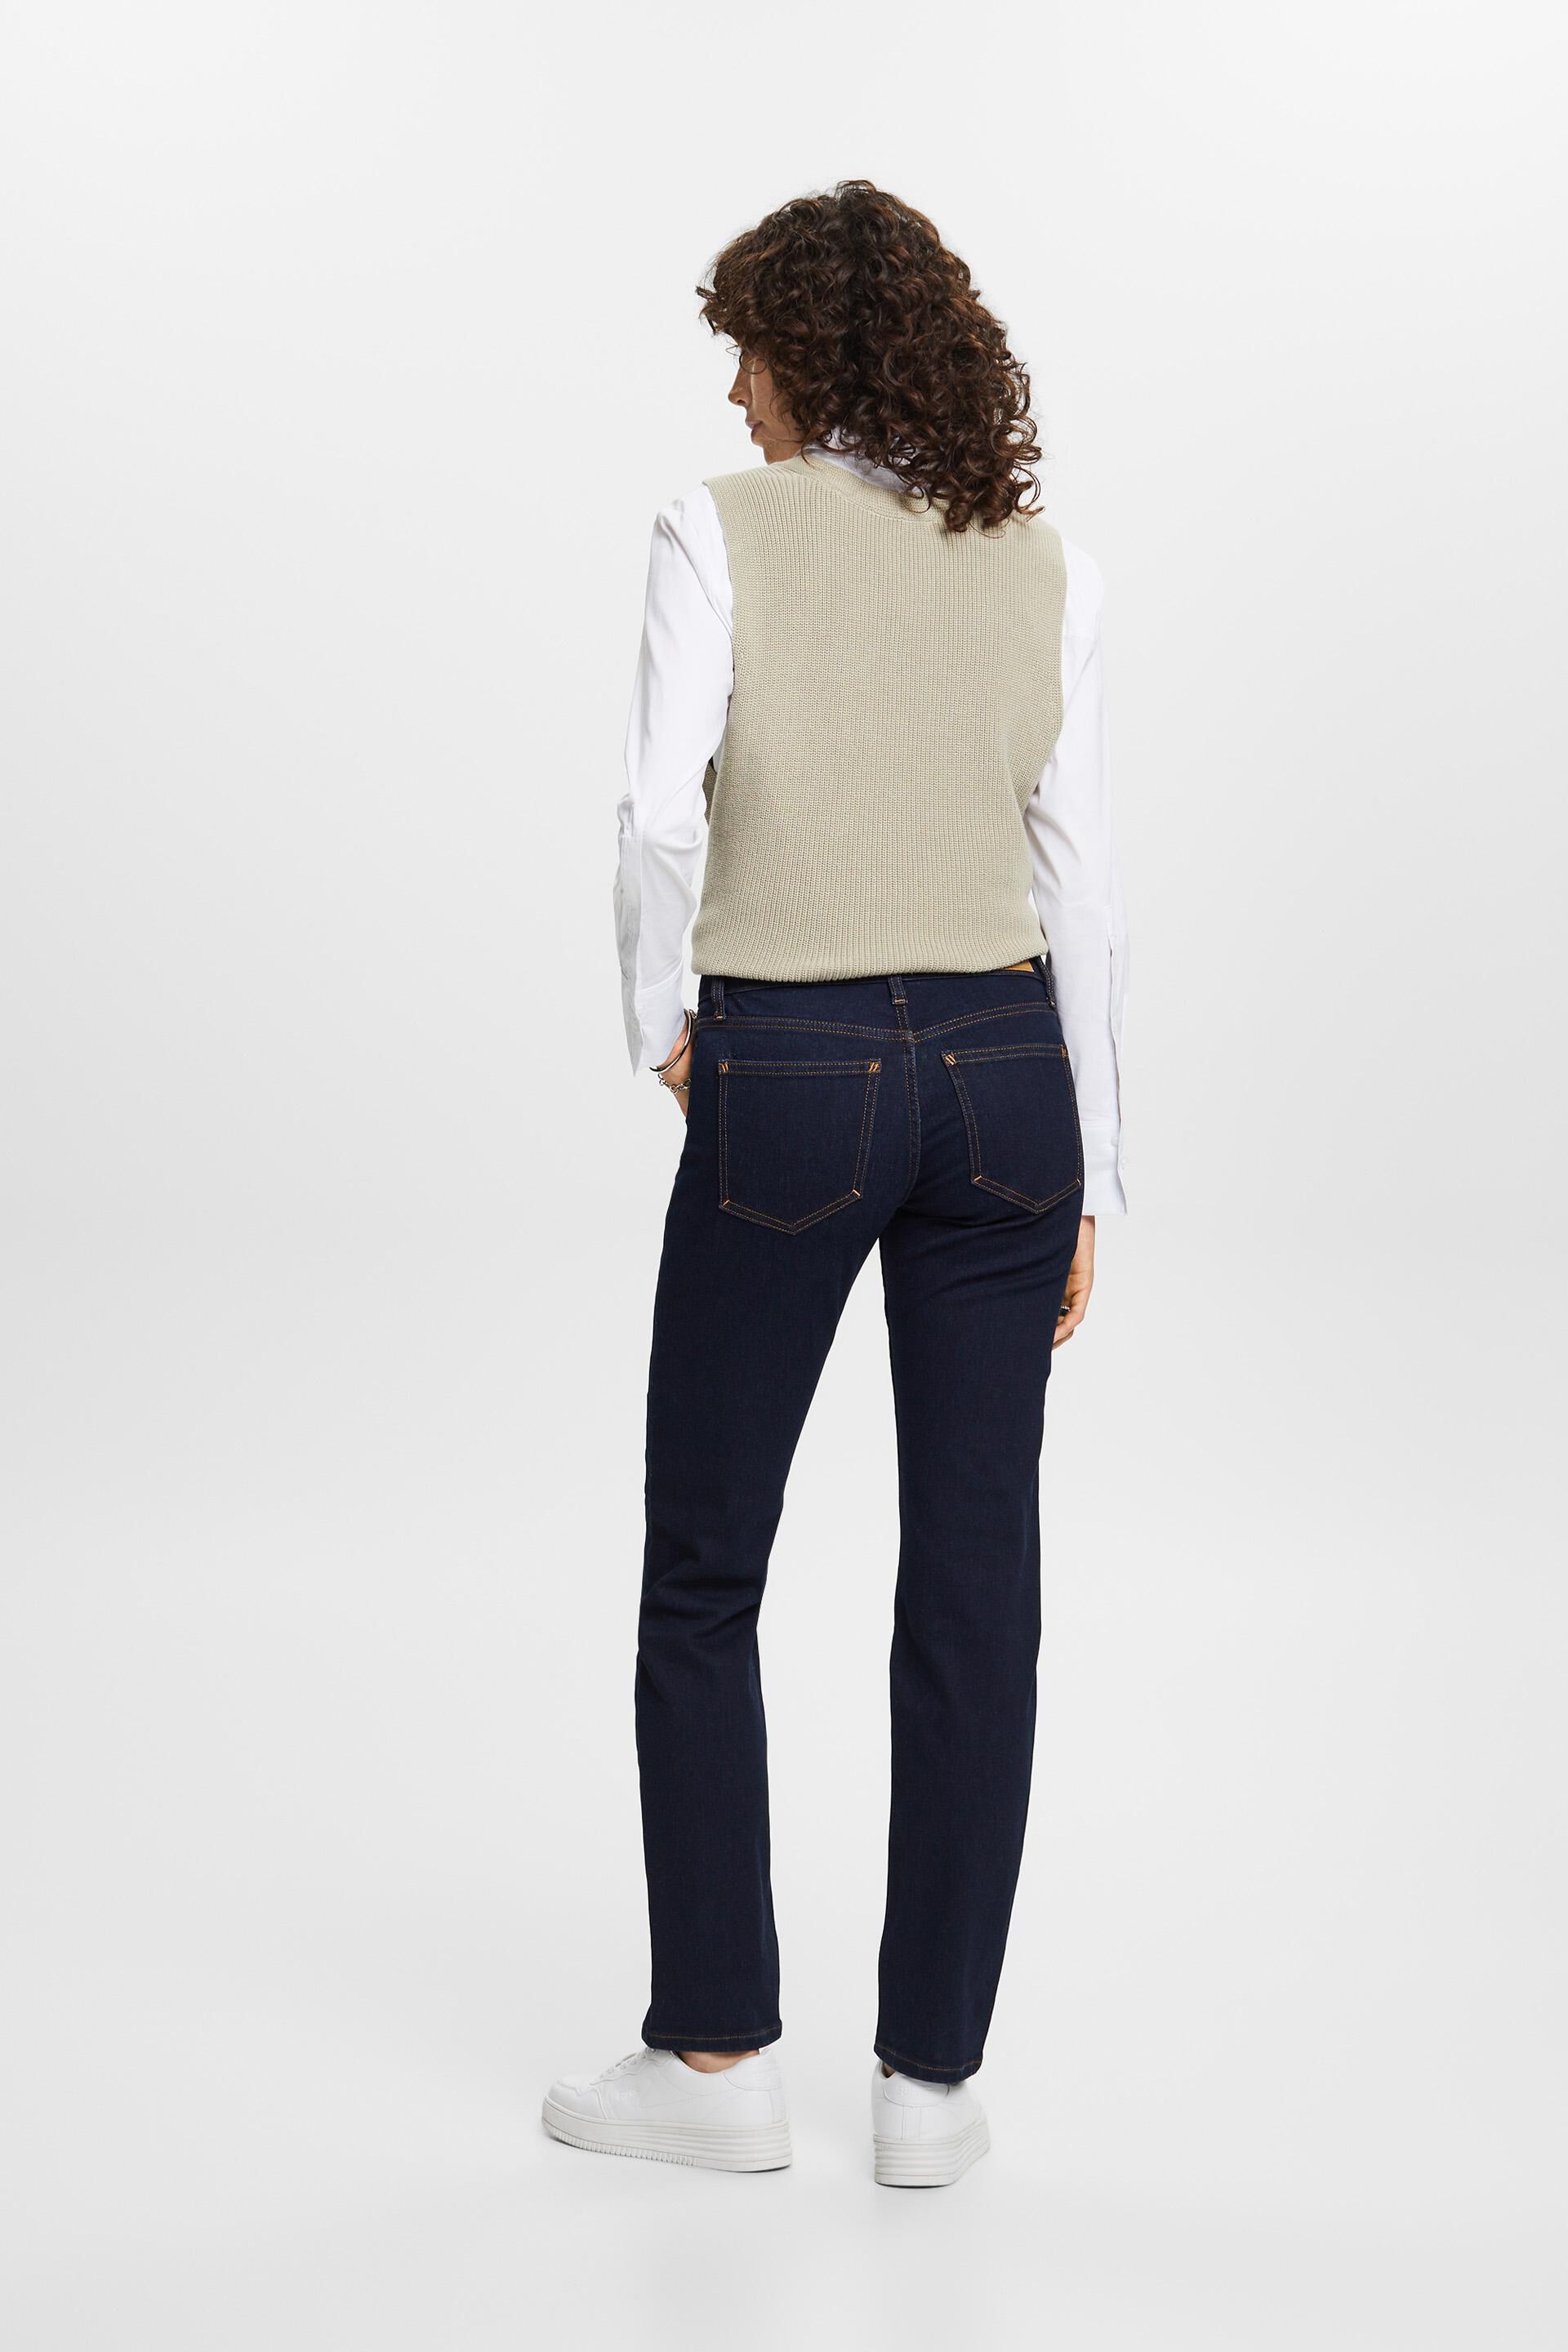 Esprit Damen Stretch-Jeans mit geradem Bein, Baumwollmischung